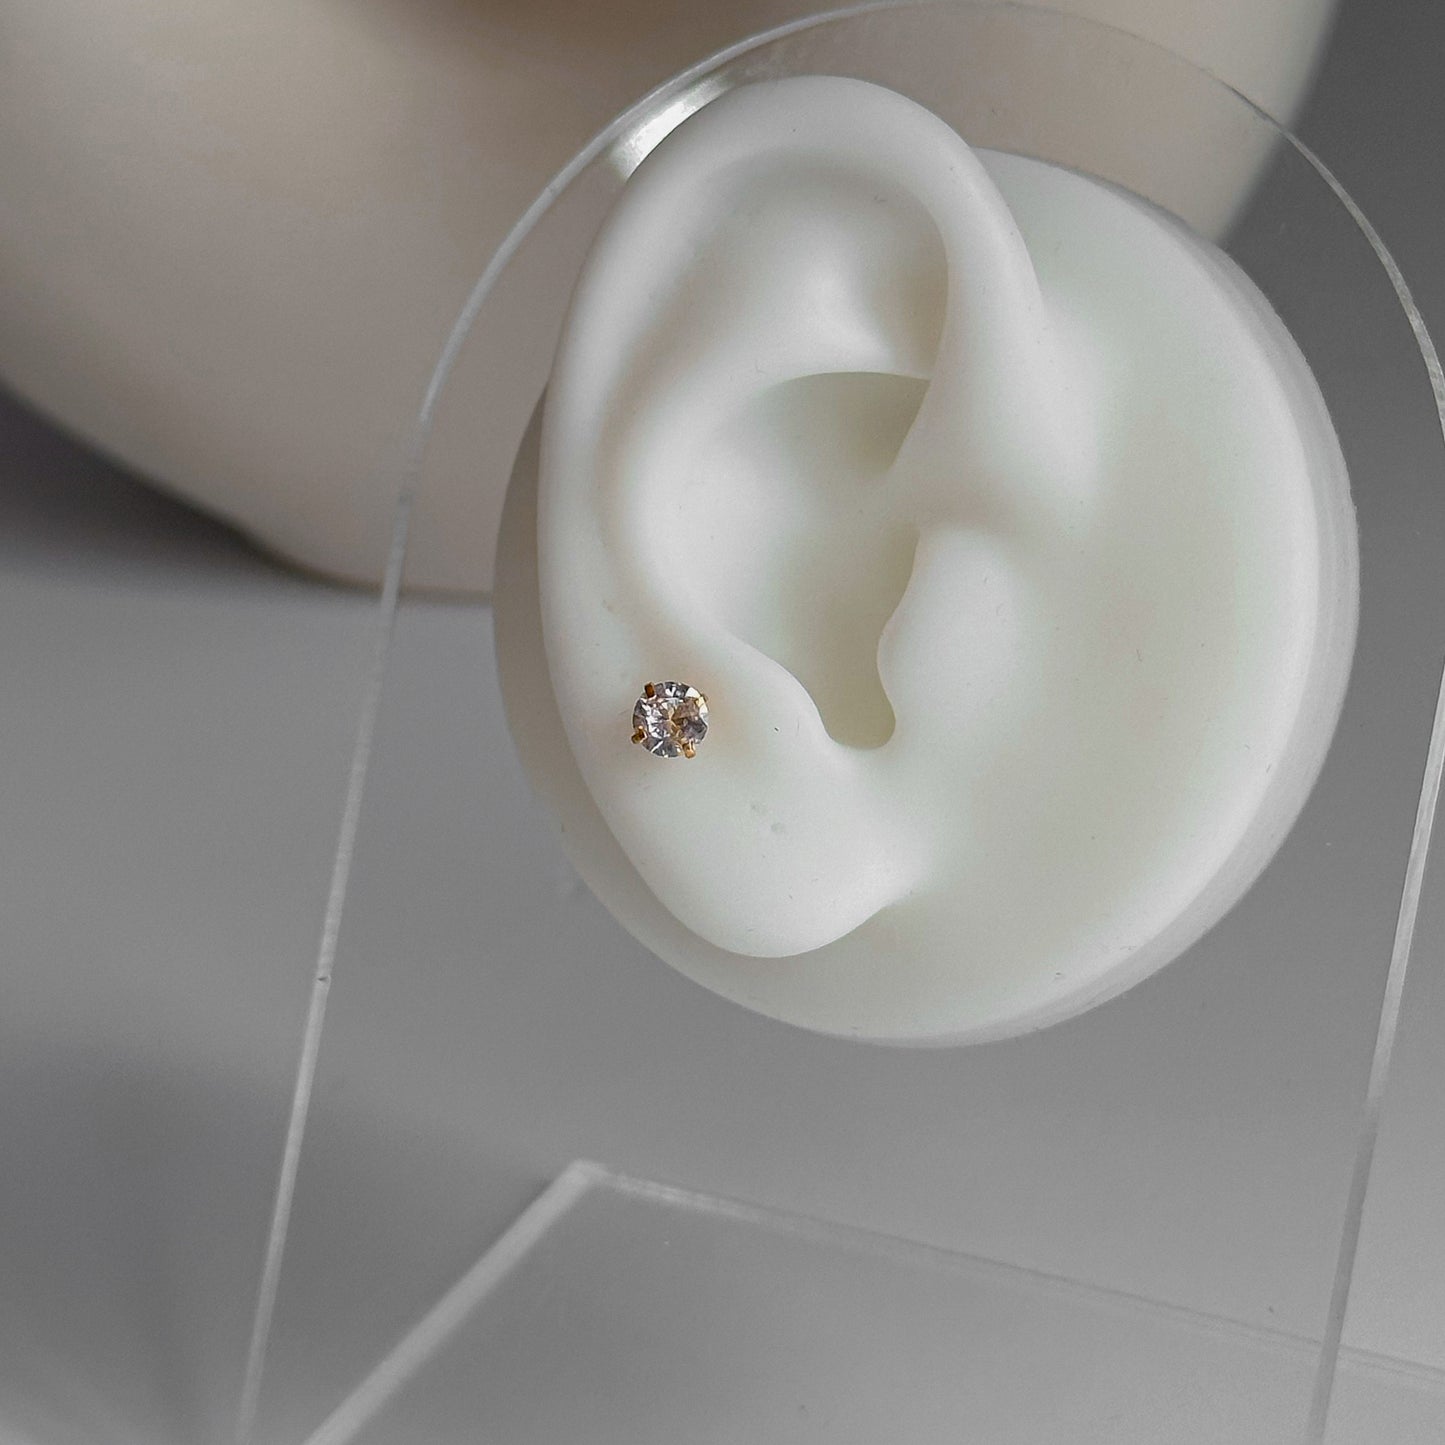 Piercing diamante 4 mm